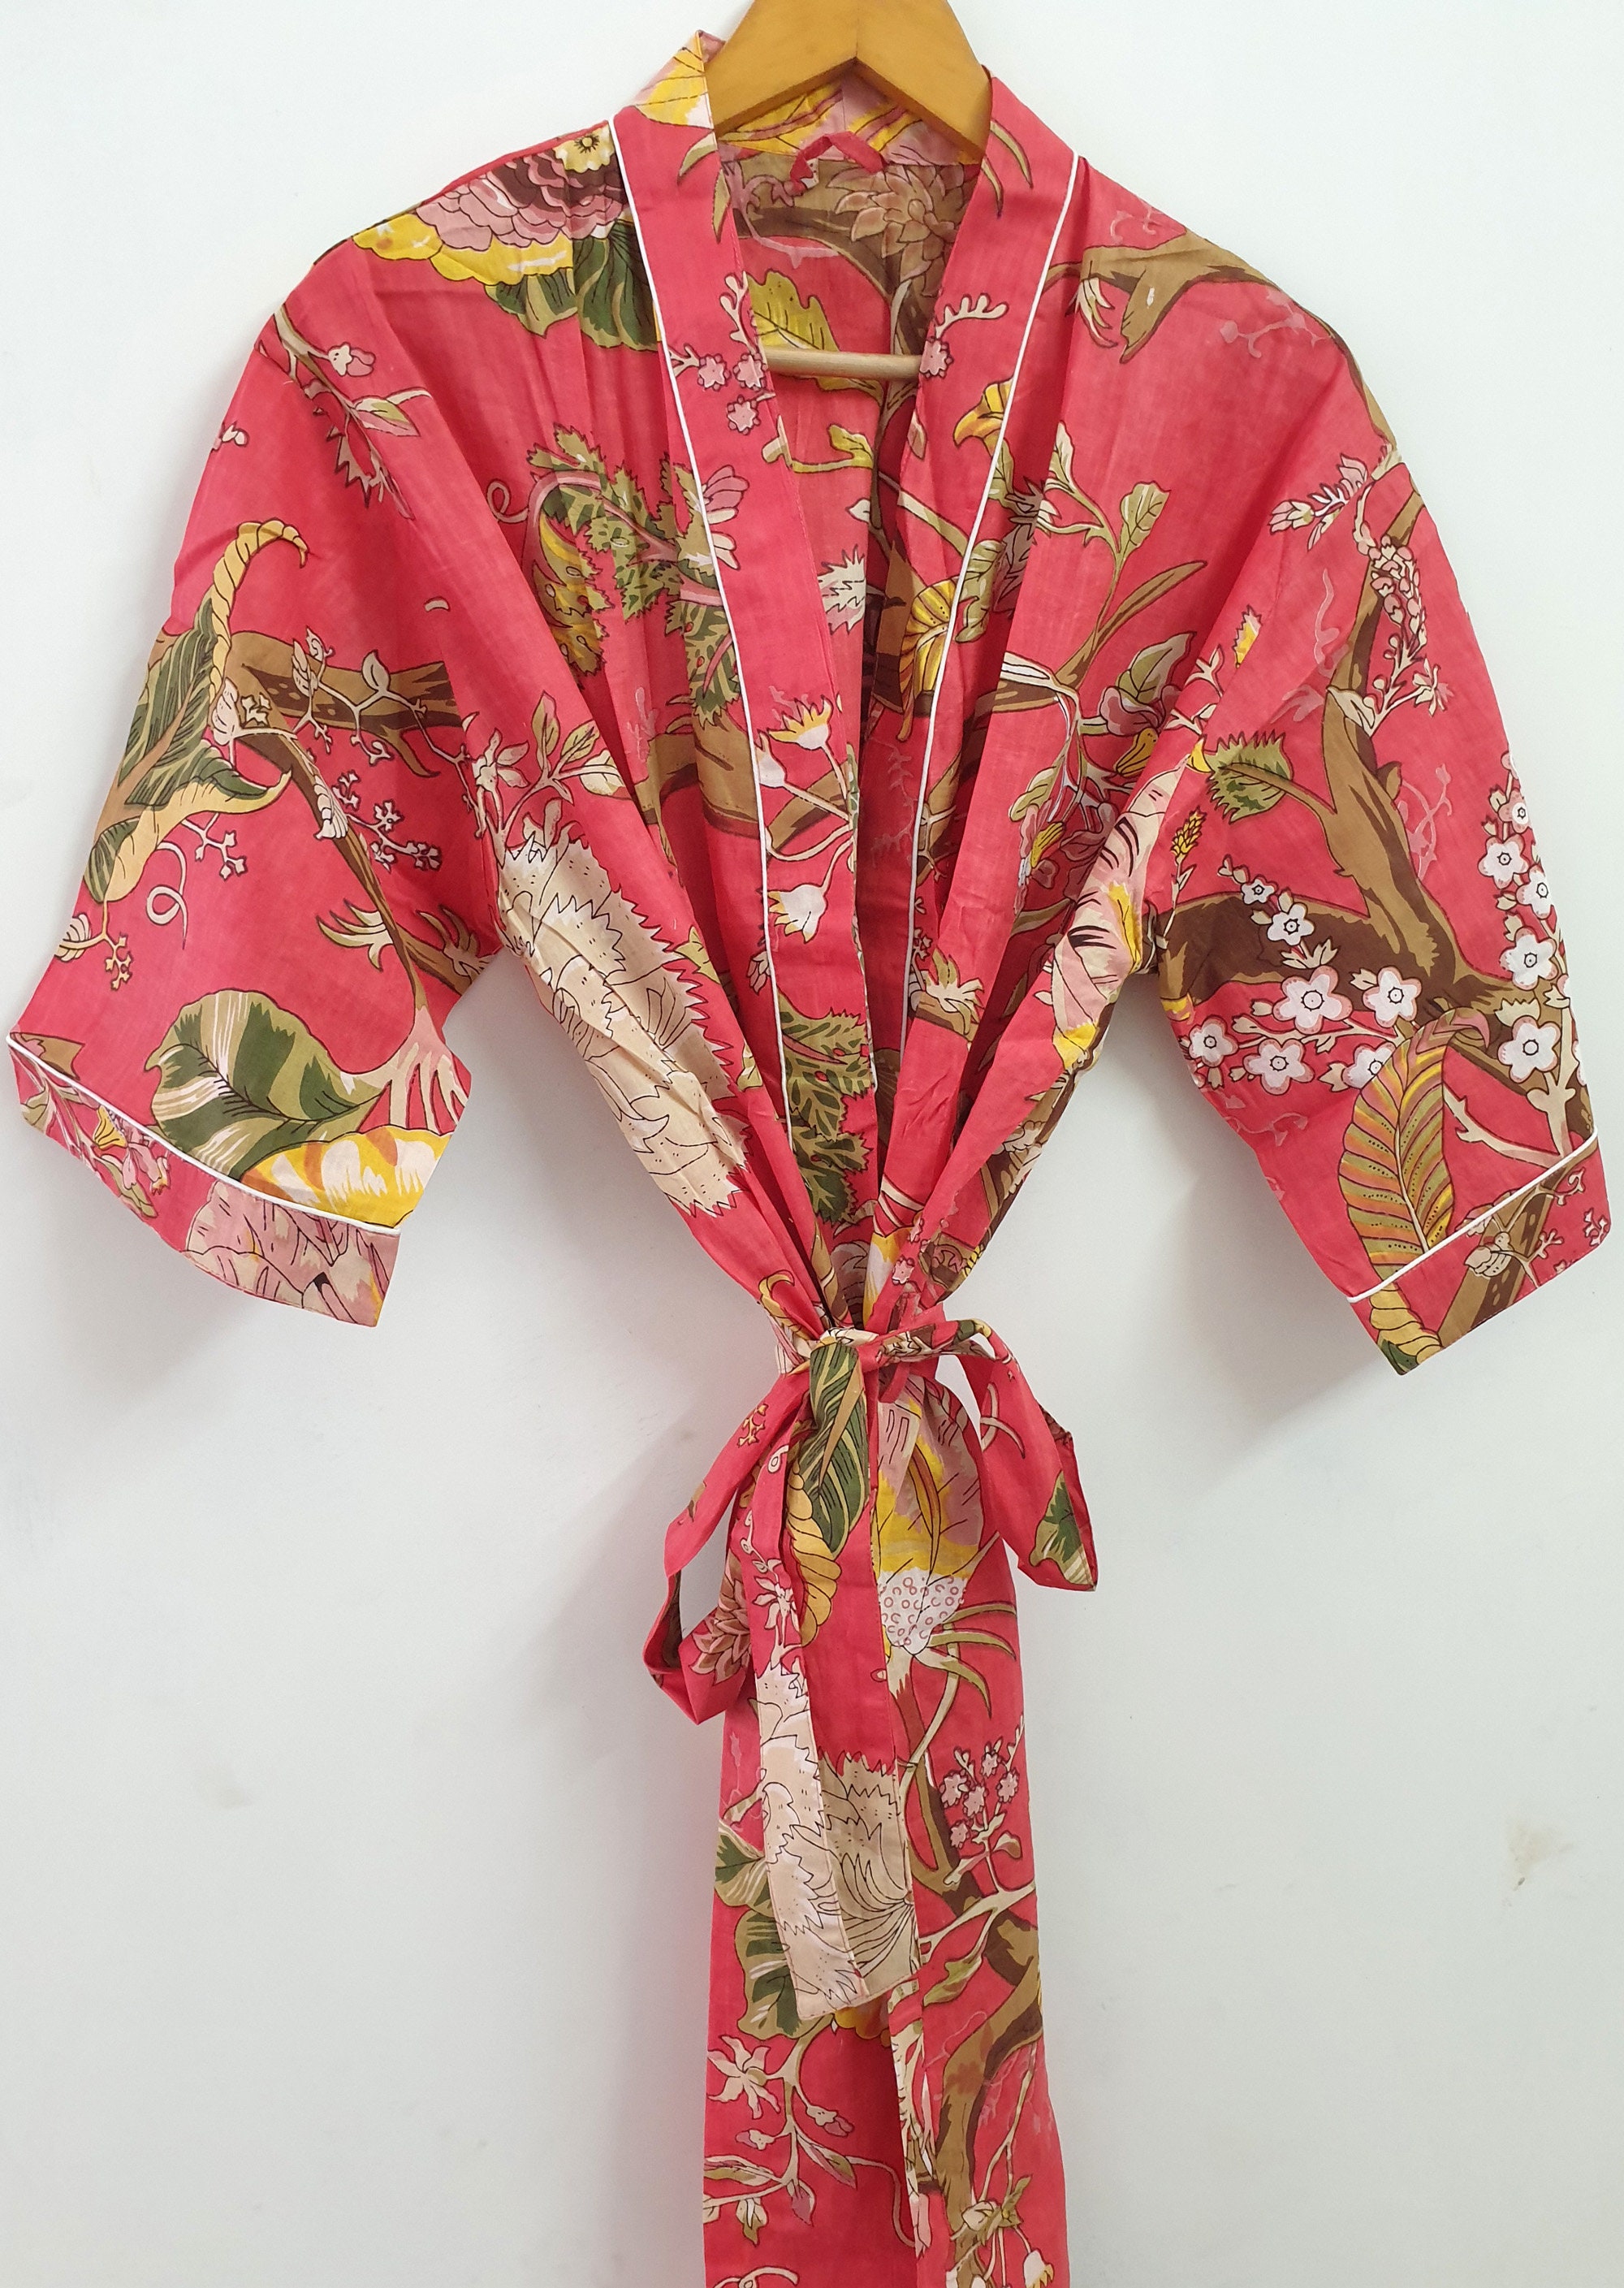 Cotton Kimono Floral Print Kimono Robe Kimono Cover up Bath | Etsy